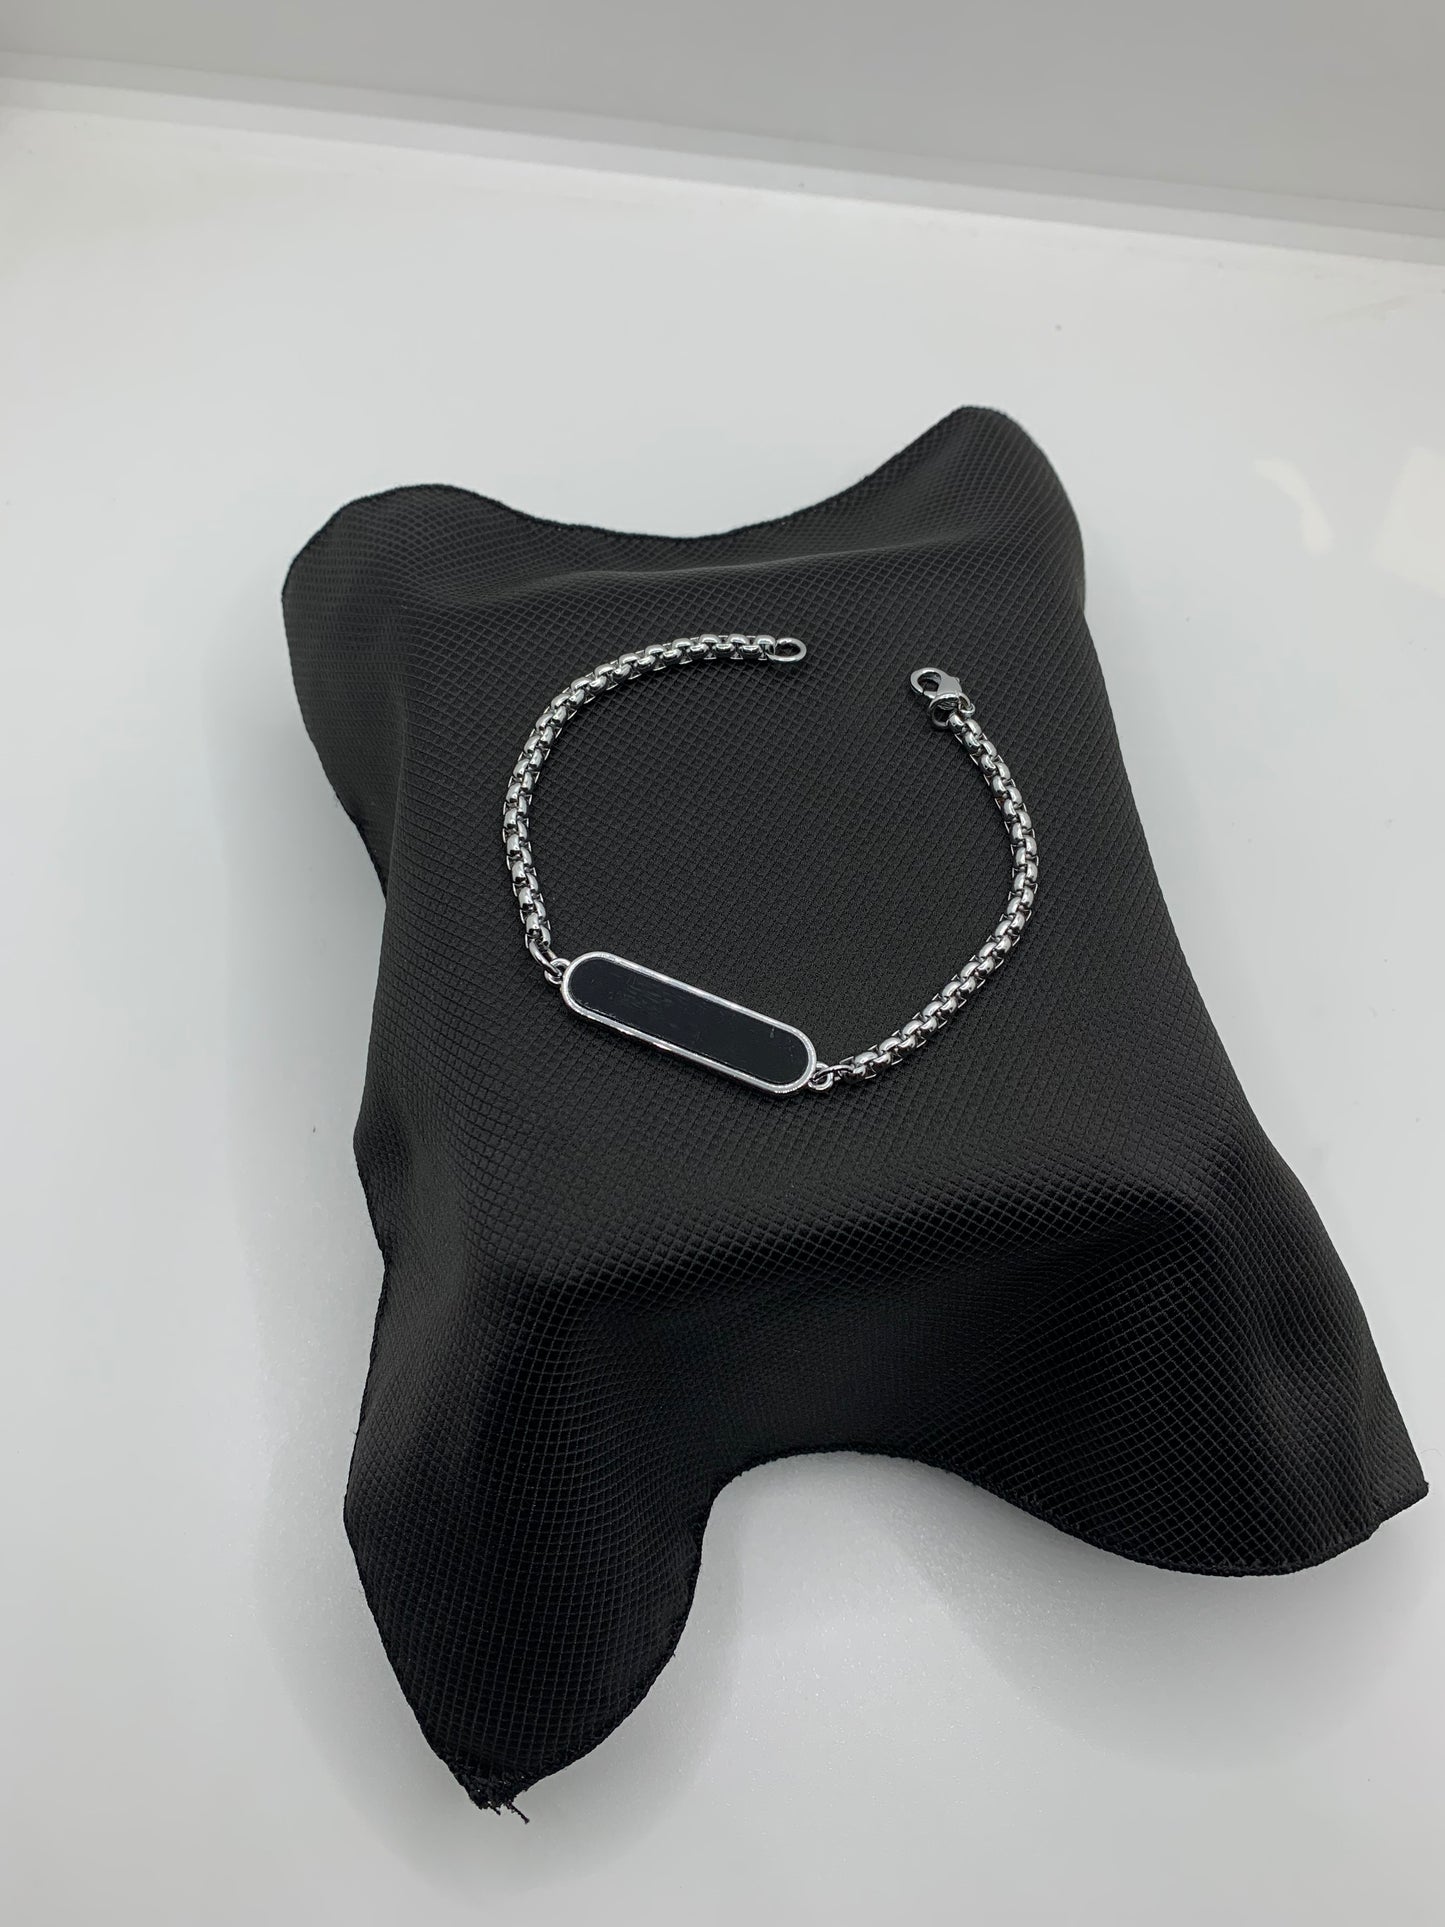 Bracelet & Ring Combo Package